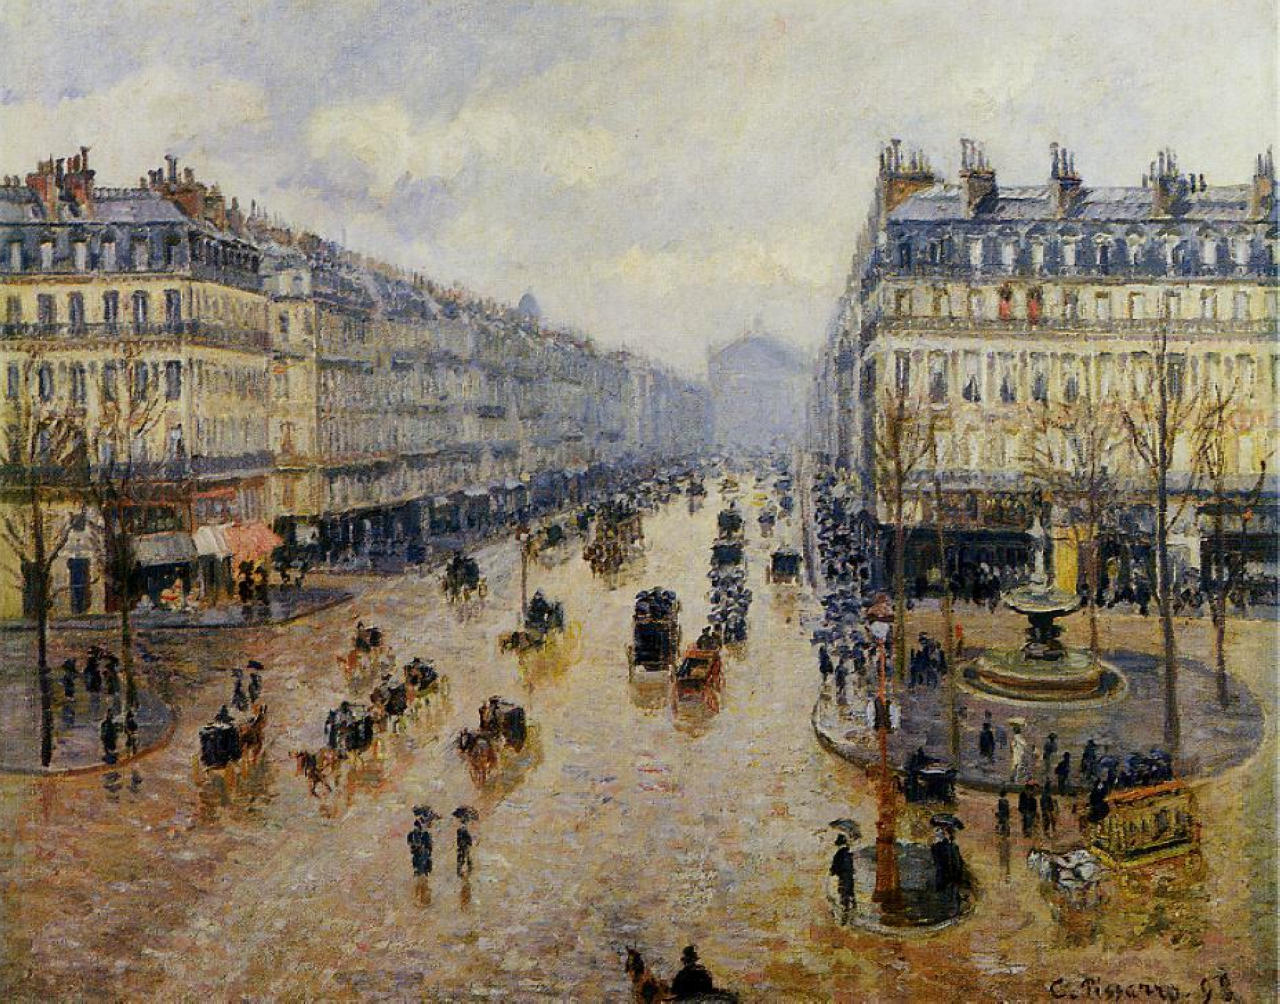 Avenue de l'Opera Rain Effect by Camille Pissarro - 1898 - 65 x 83 cm private collection